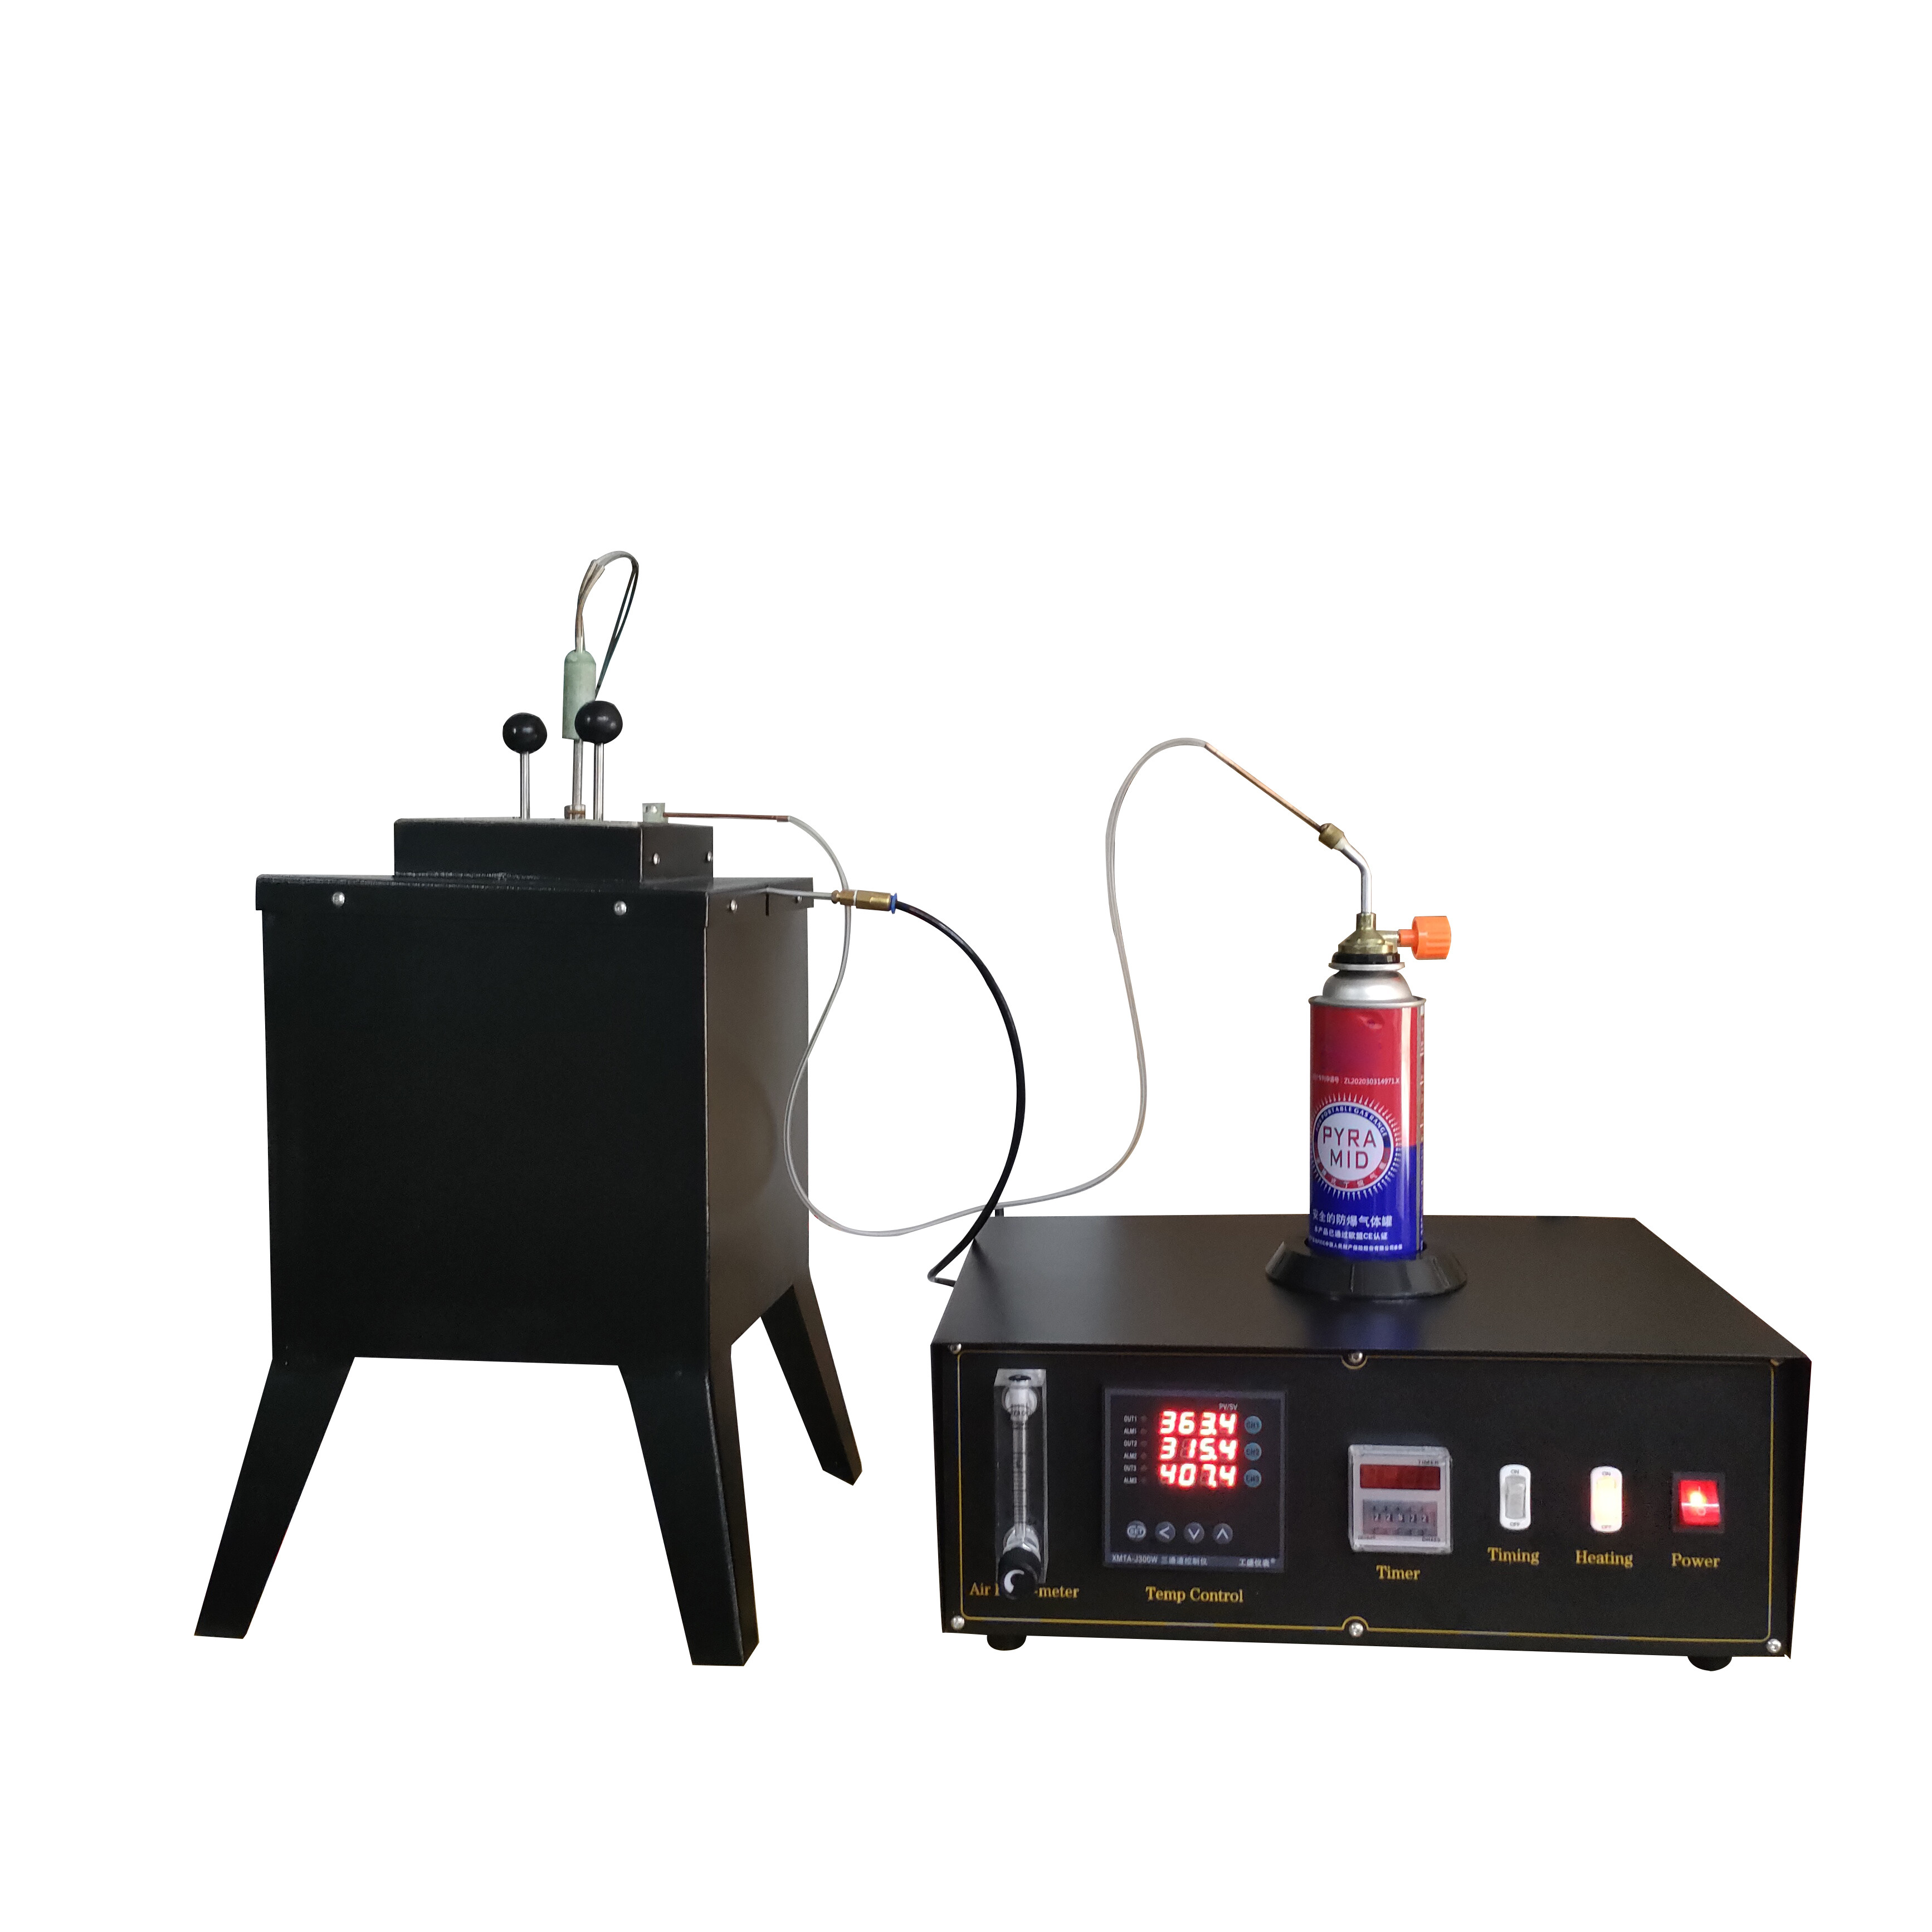 Sprzęt do testowania laboratoryjnego pieca testowego, test palności pionowej ASTM ISO871